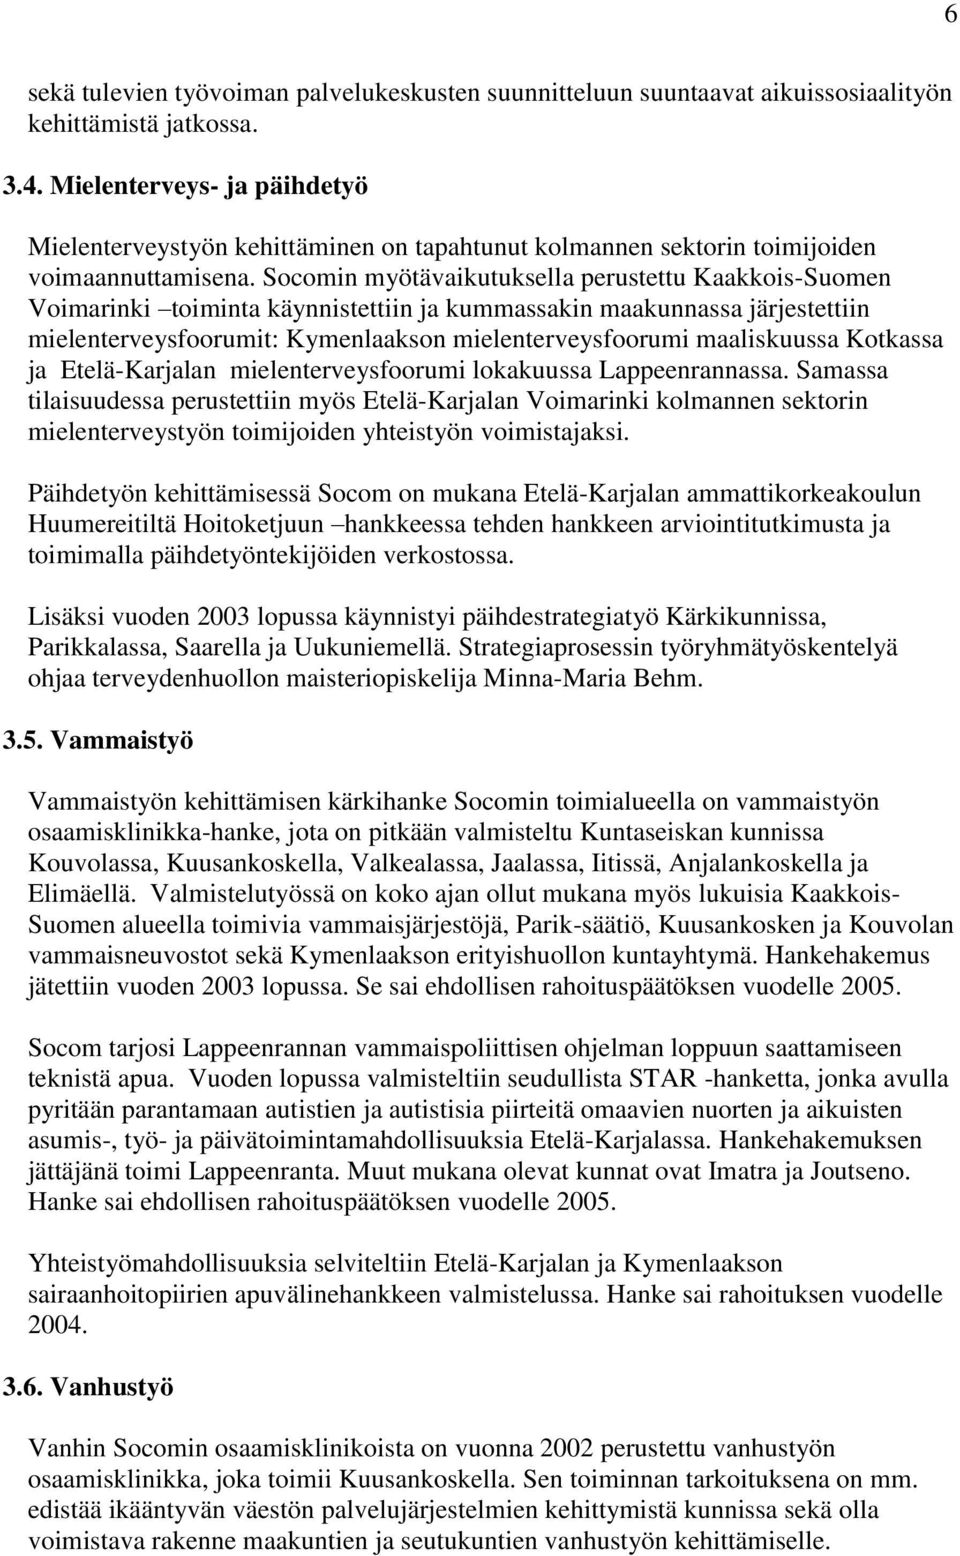 Socomin myötävaikutuksella perustettu Kaakkois-Suomen Voimarinki toiminta käynnistettiin ja kummassakin maakunnassa järjestettiin mielenterveysfoorumit: Kymenlaakson mielenterveysfoorumi maaliskuussa